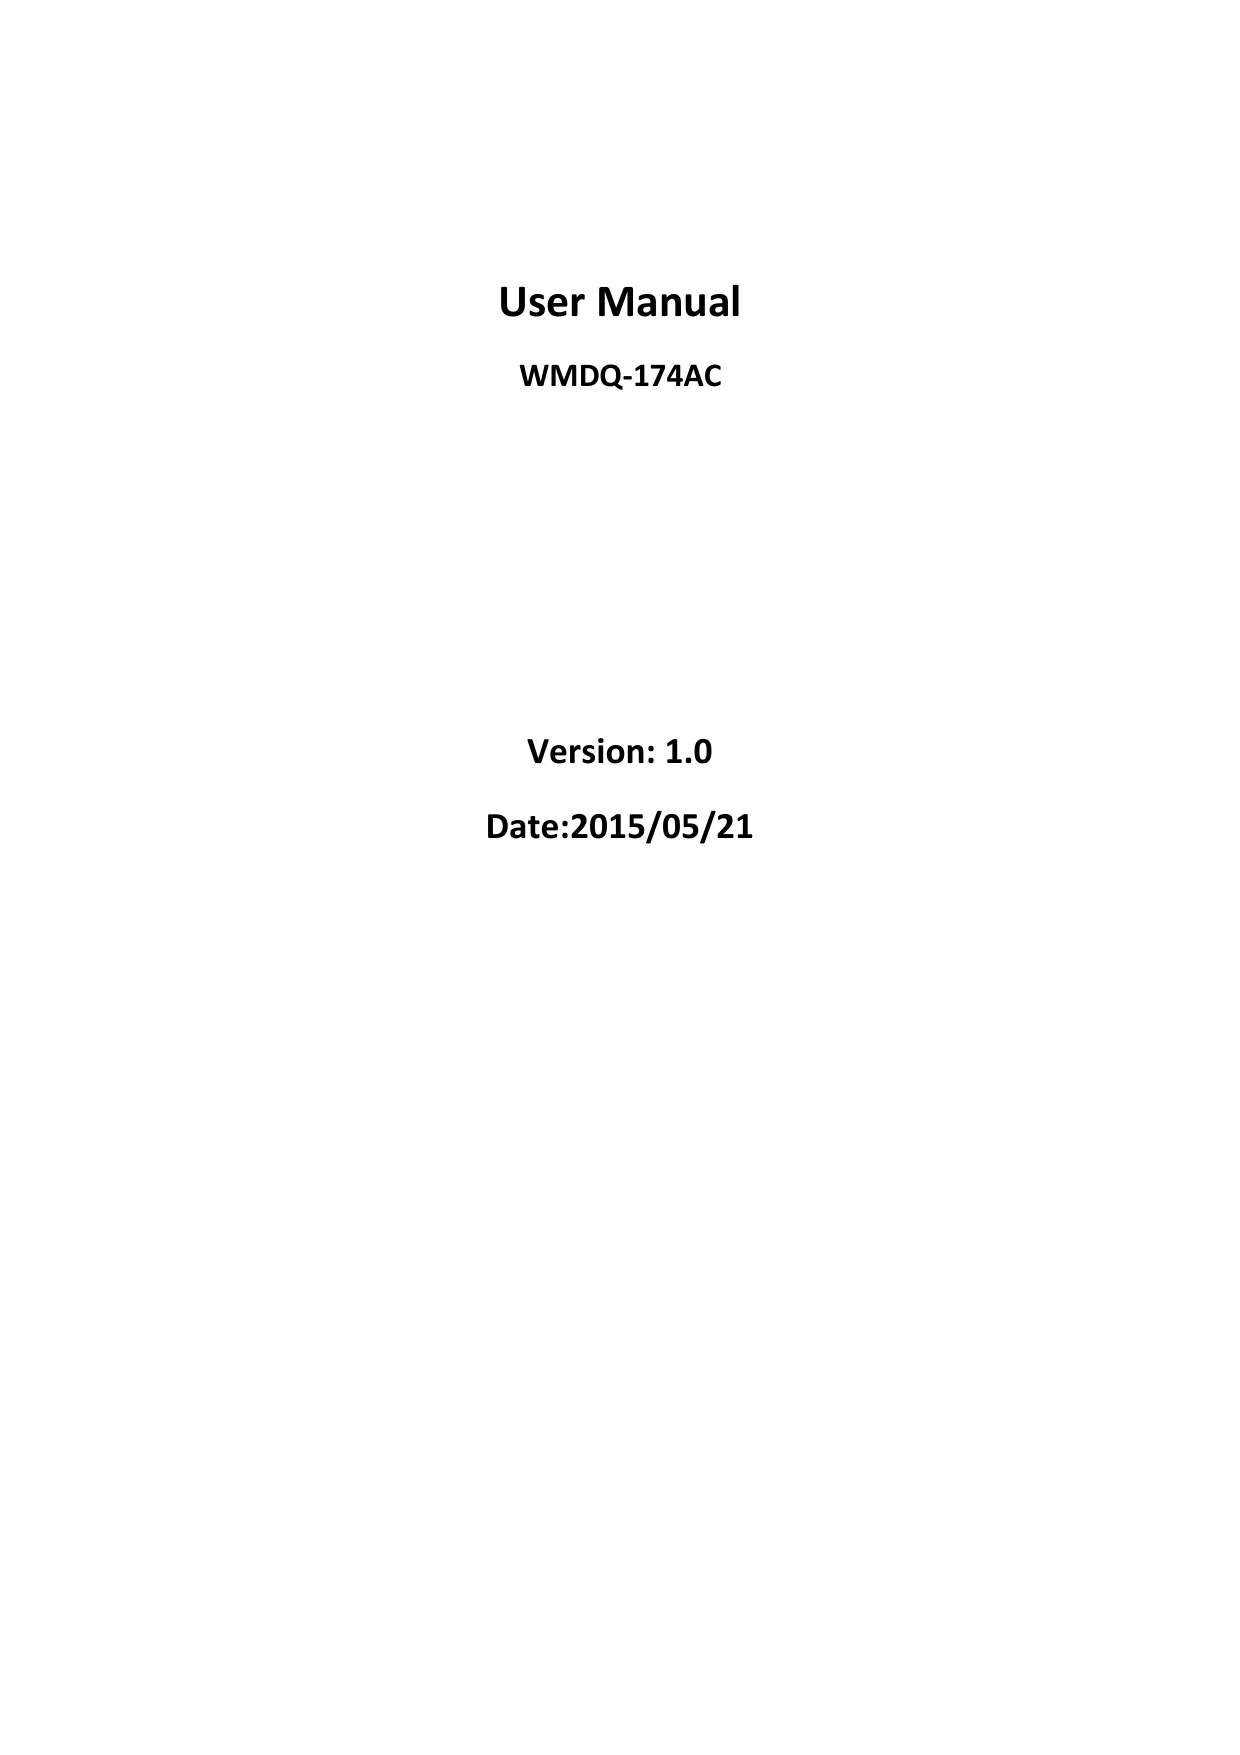                                                  User Manual WMDQ-174AC     Version: 1.0 Date:2015/05/21           